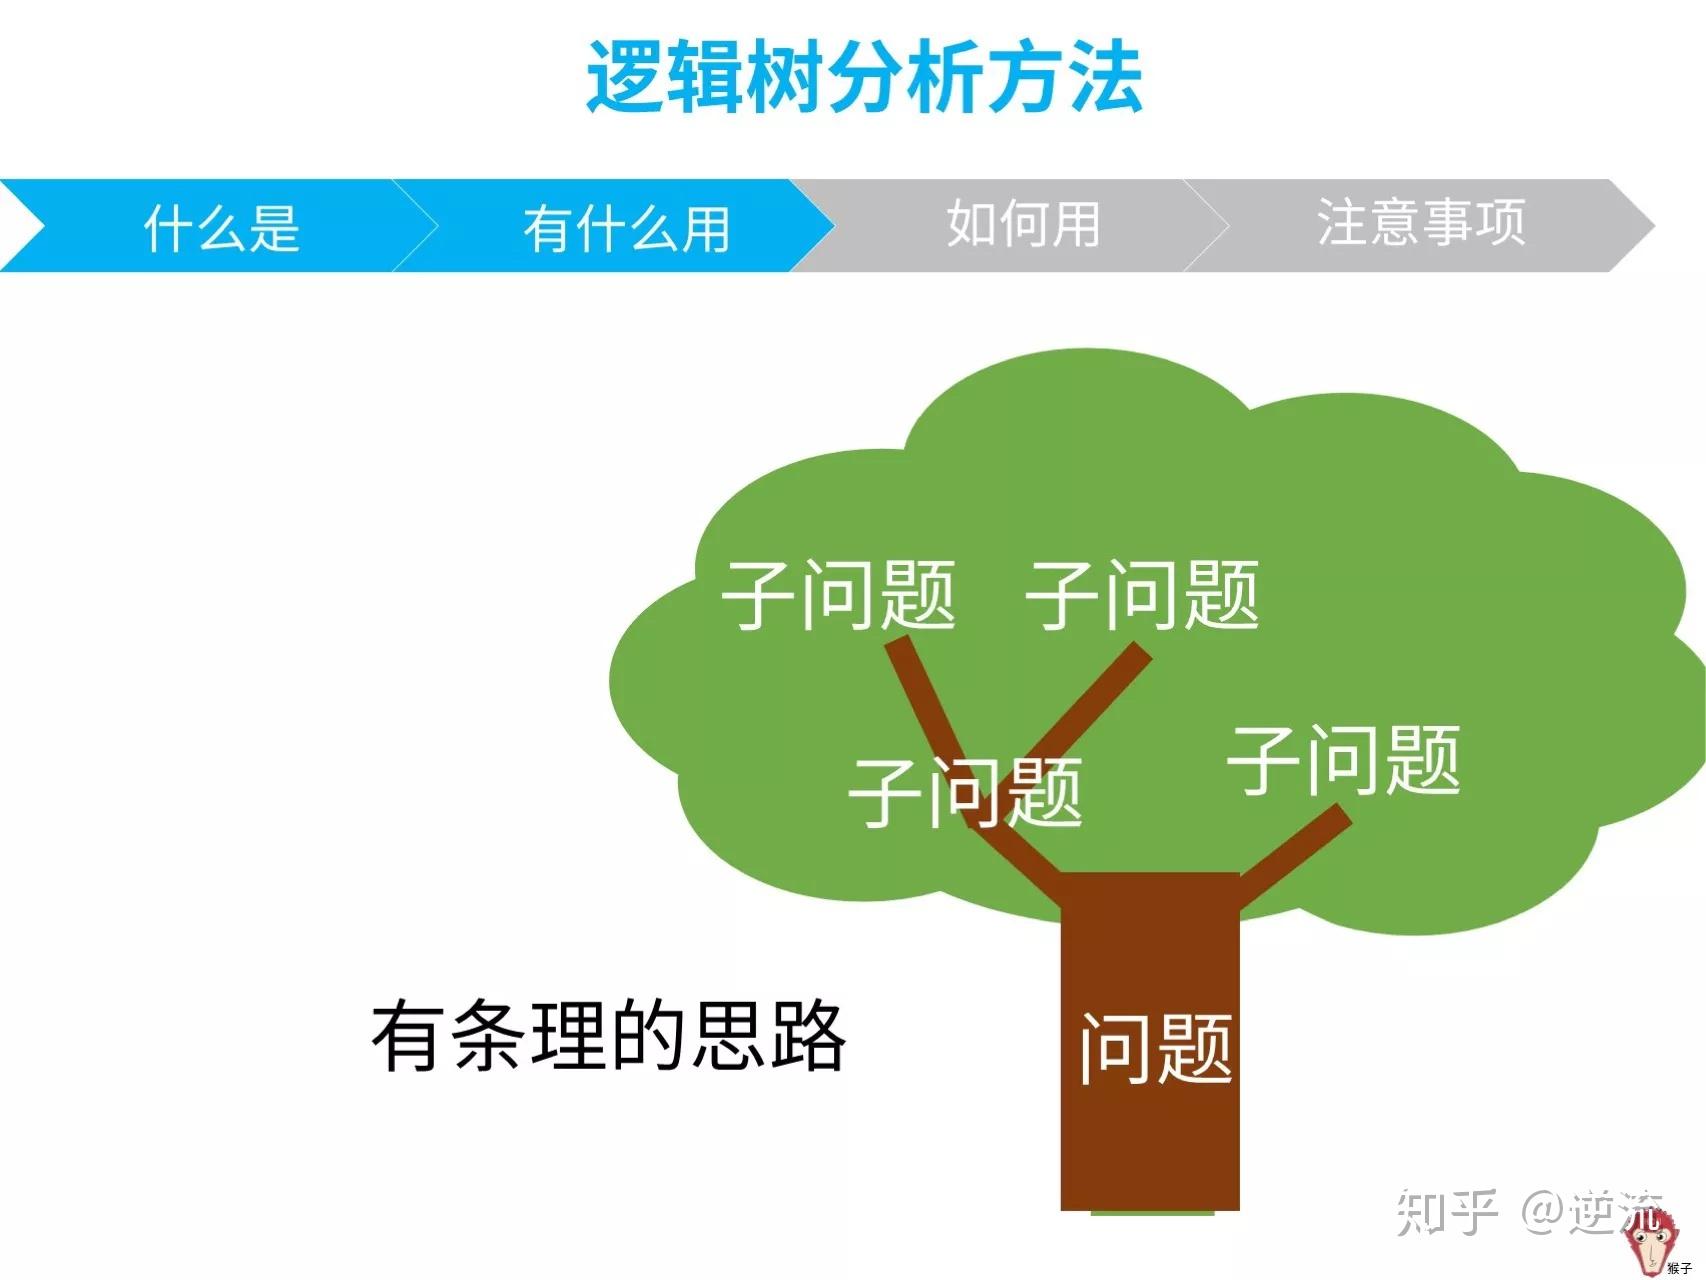 逻辑树分析法的目的,就是把复杂问题变的简单简单概括:把问题看做树木